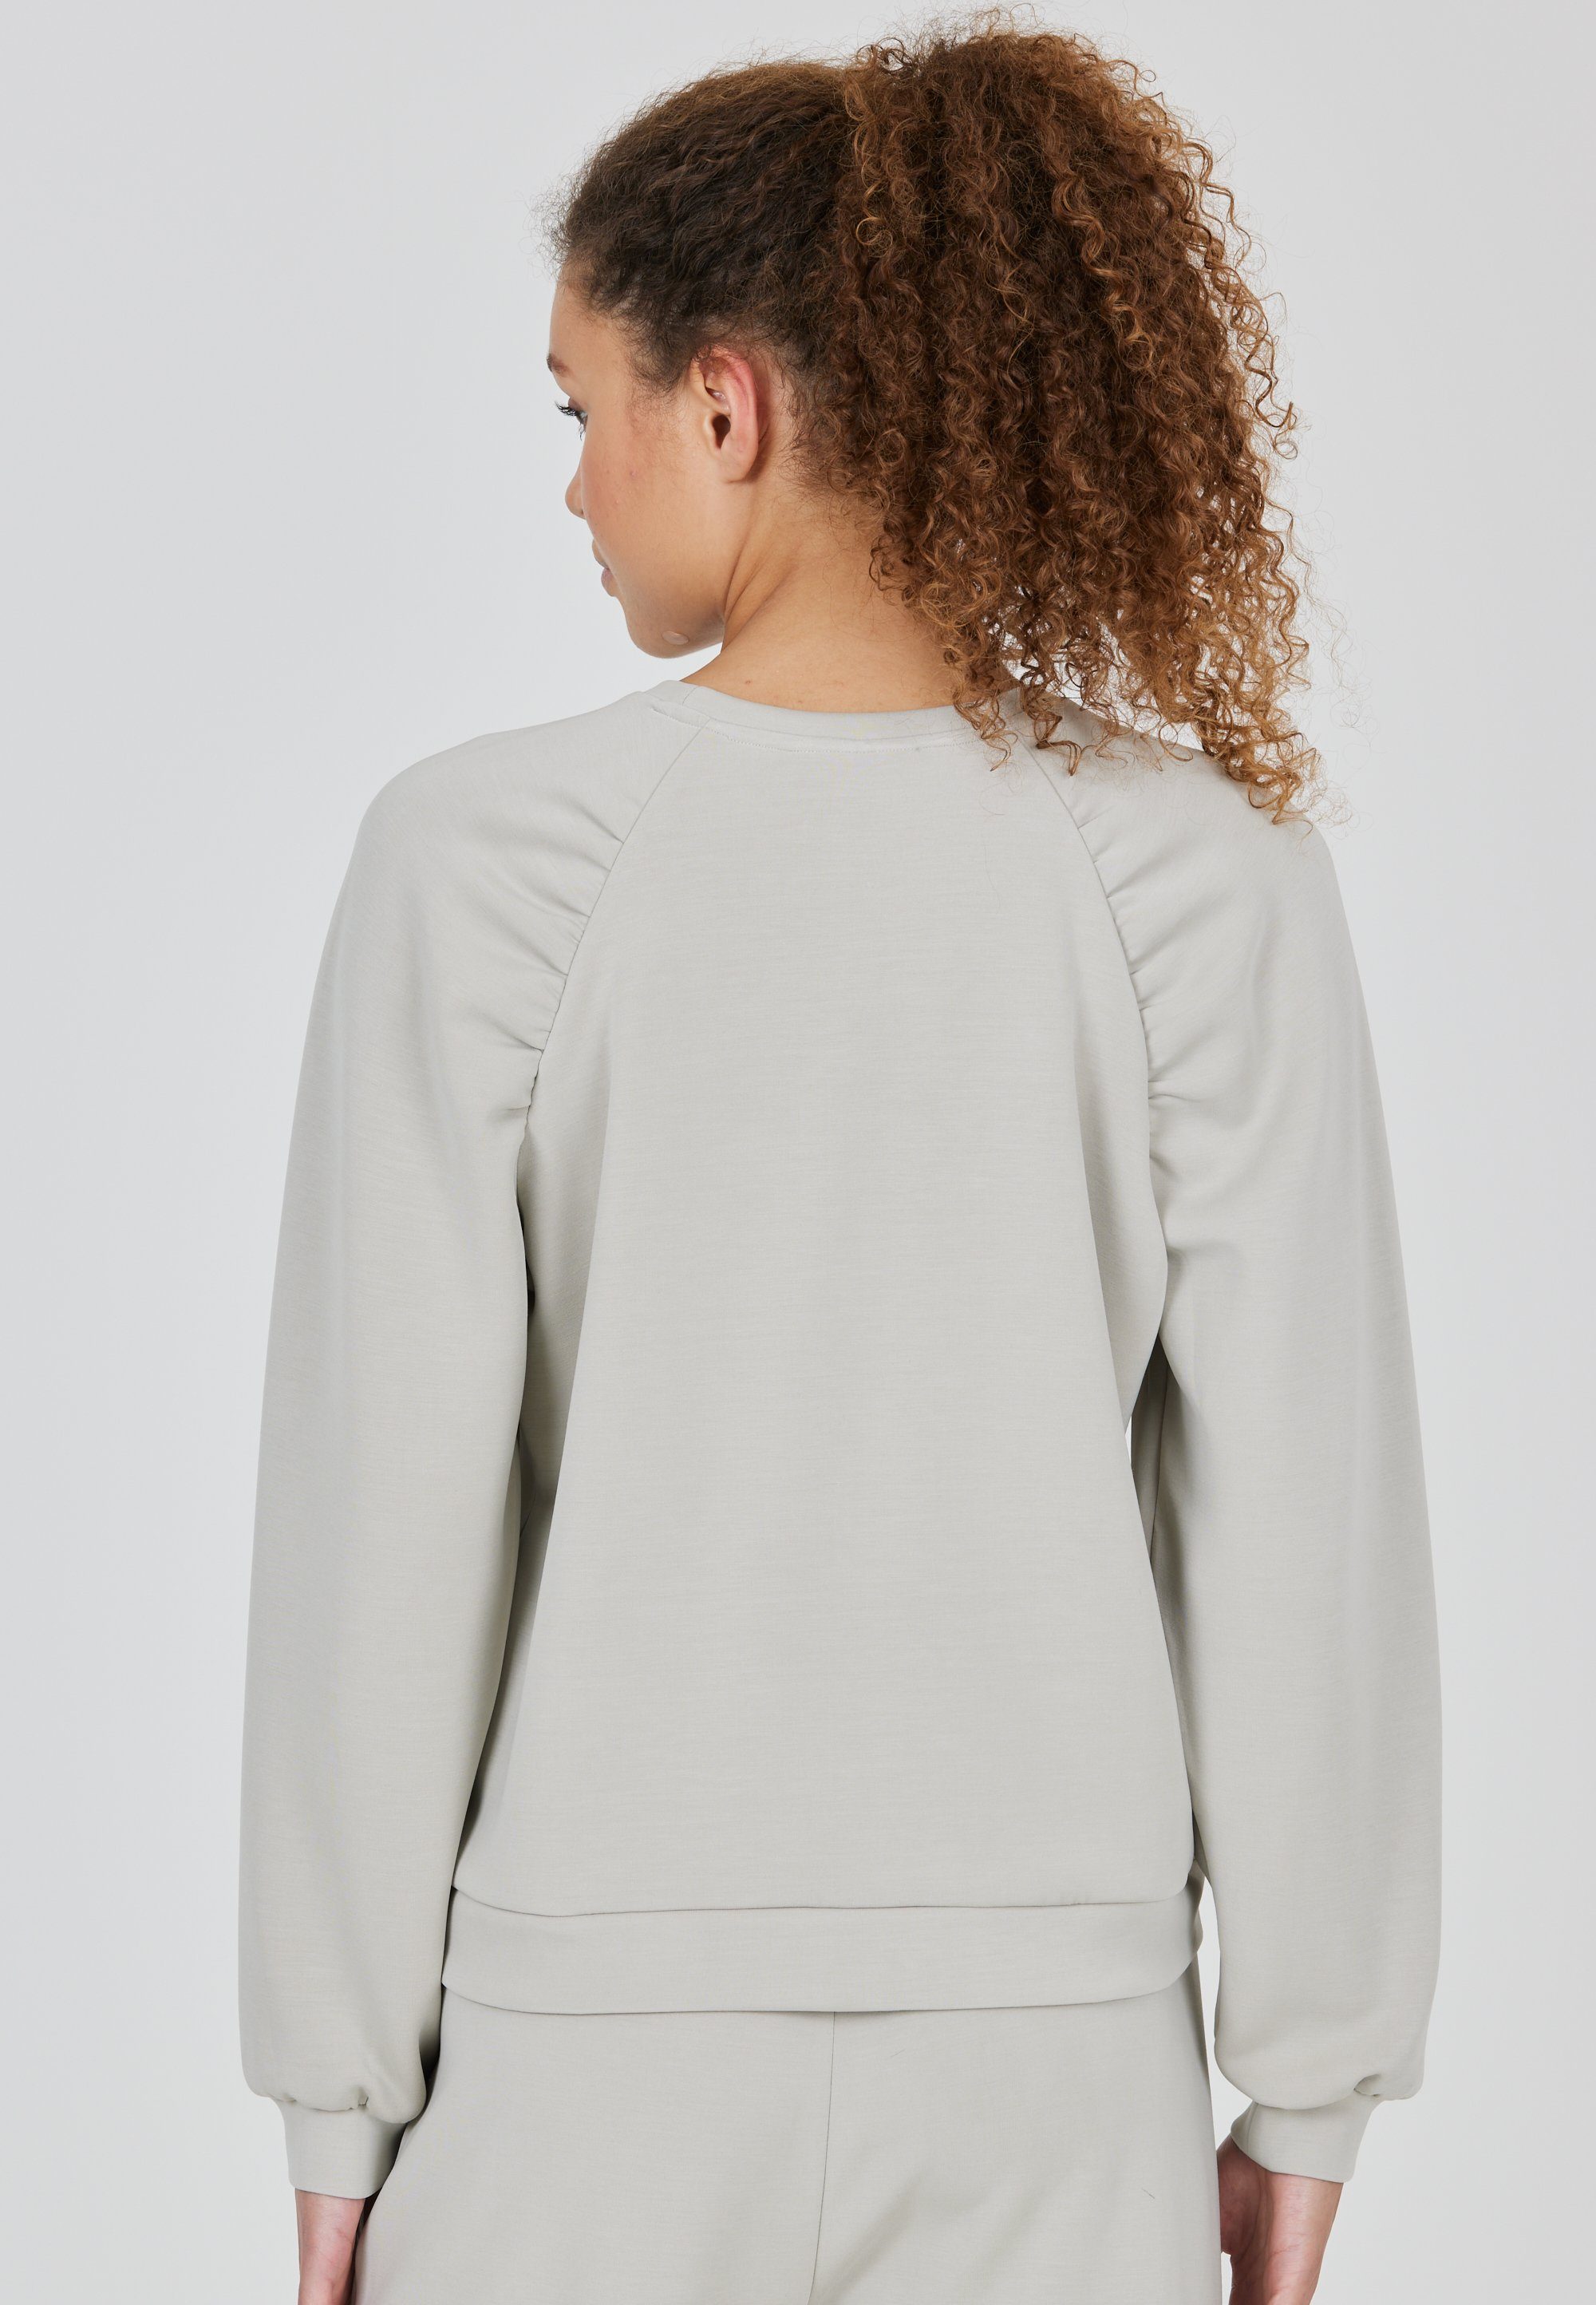 Jillnana ATHLECIA in Design hellbeige Sweatshirt schlichtem